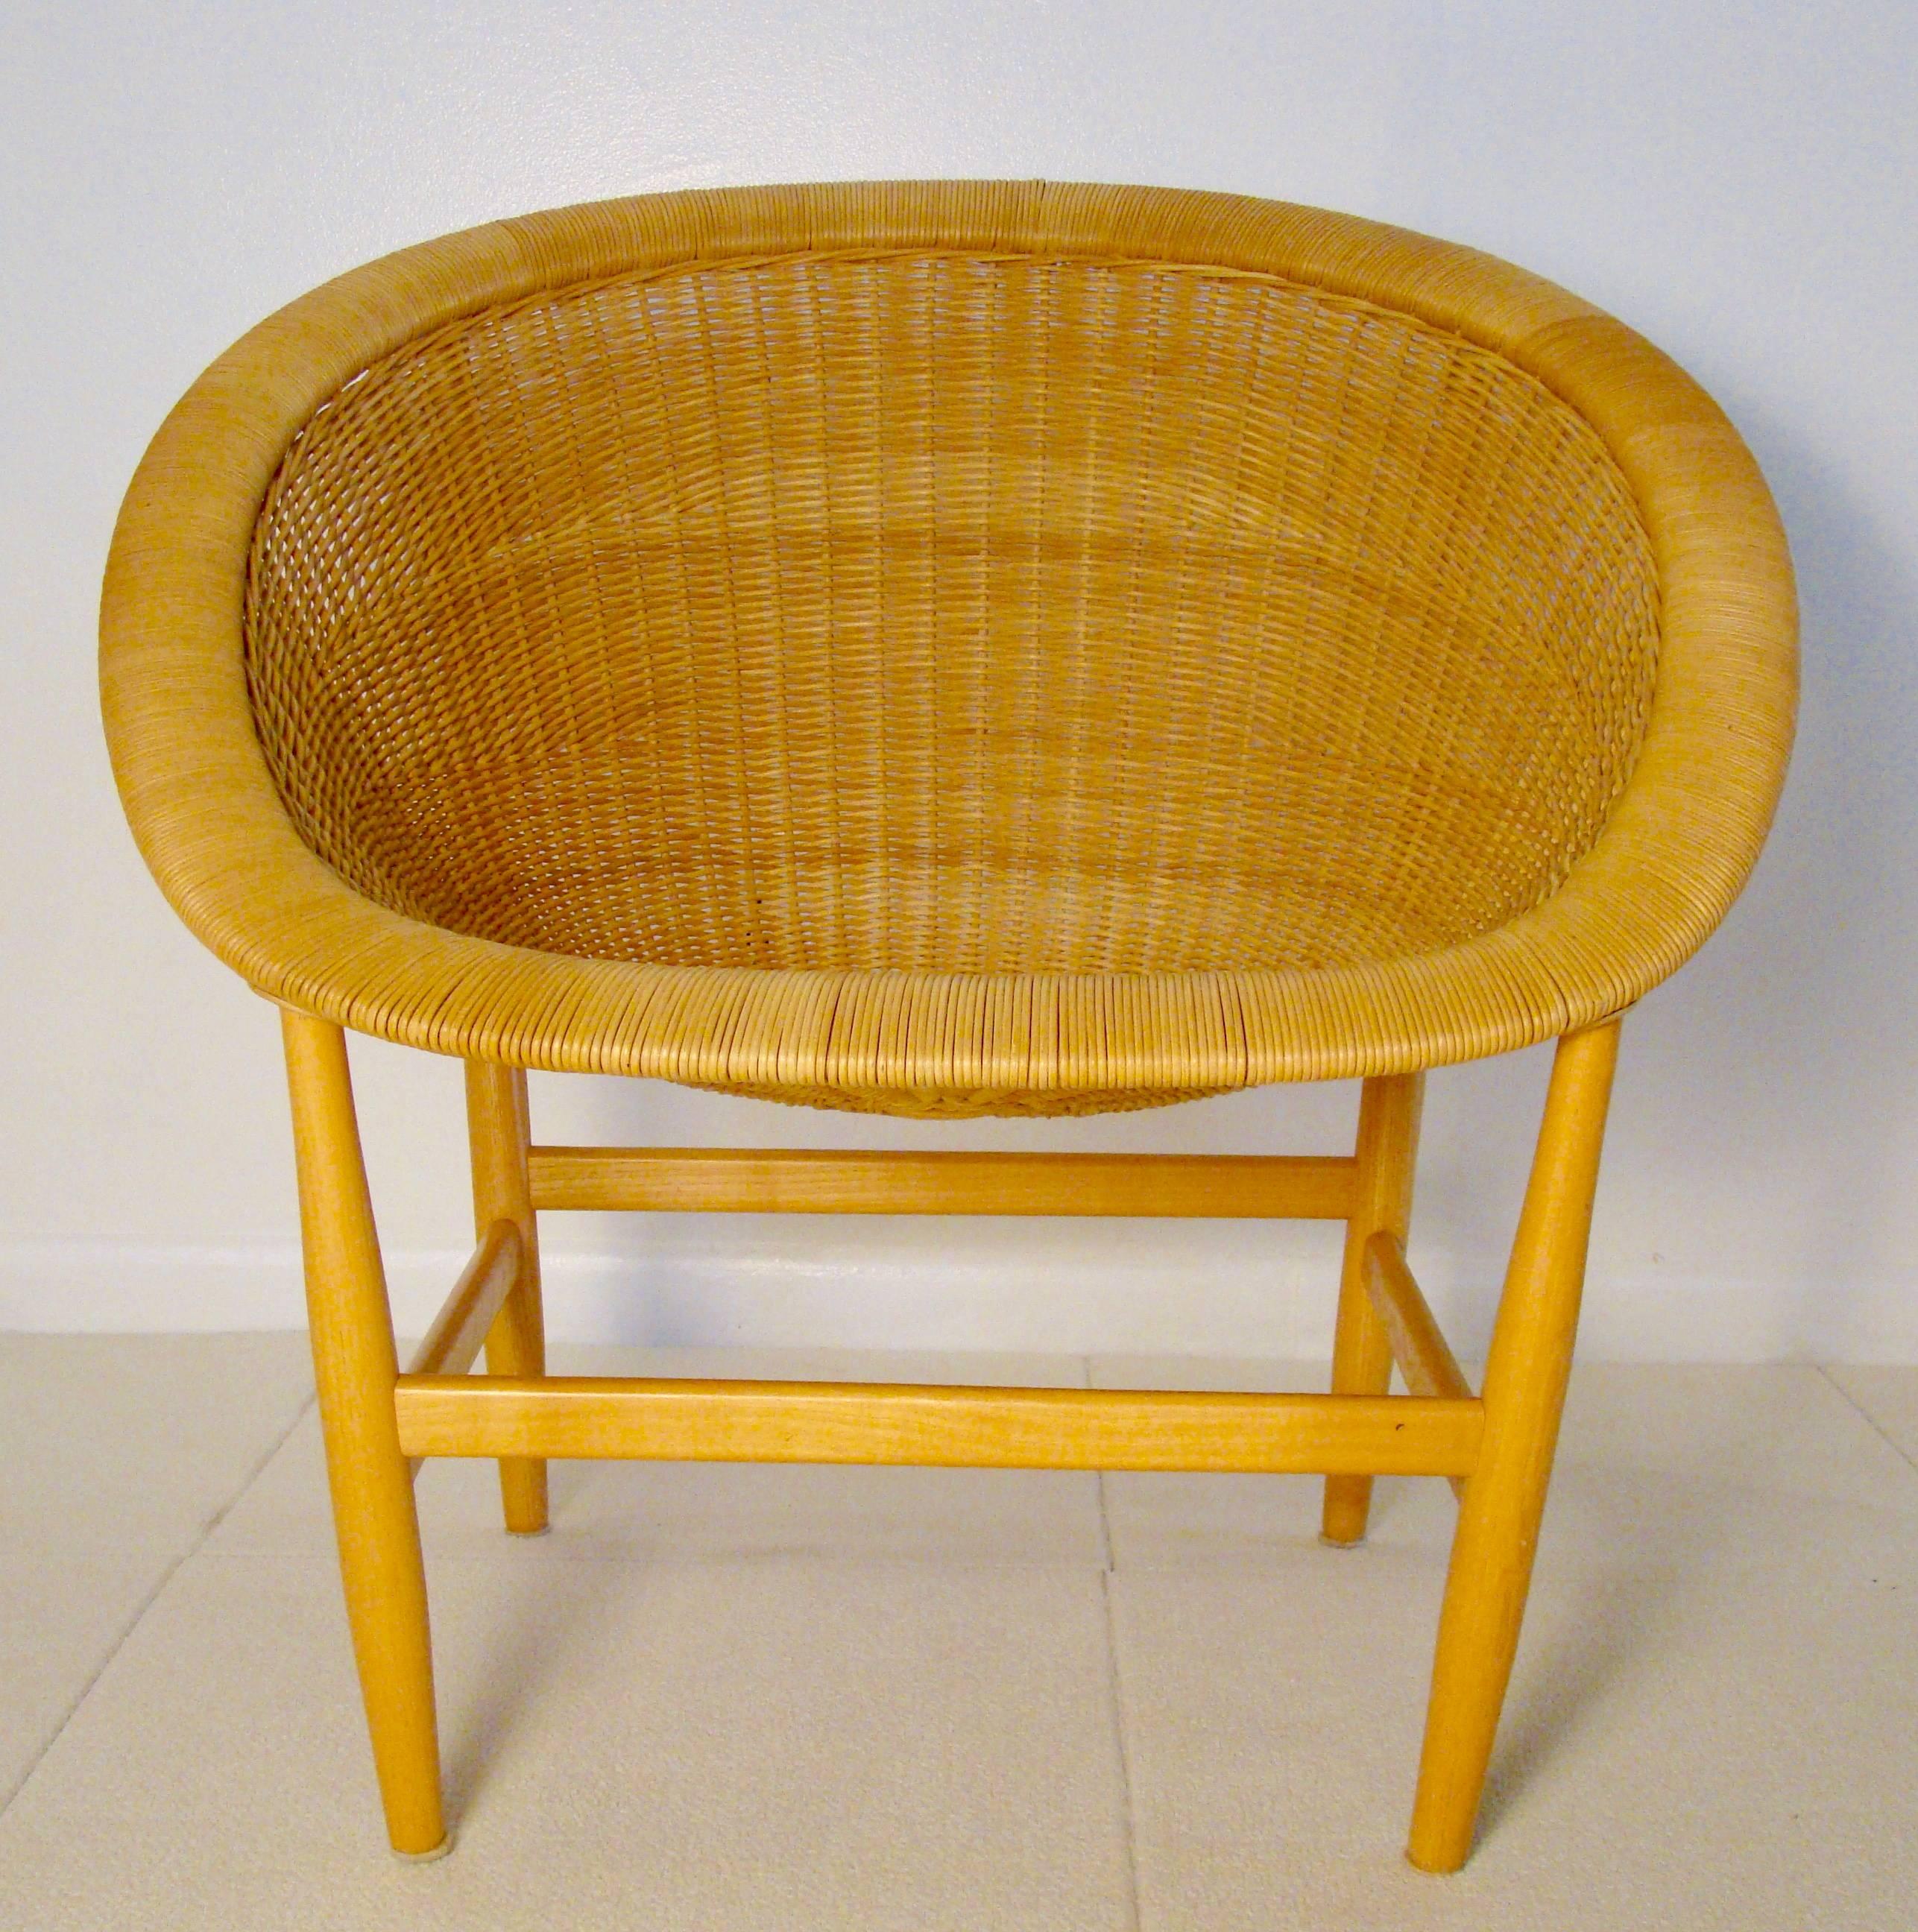 Beautiful Wicker Basket Lounge Chair by Nanna Ditzel 1